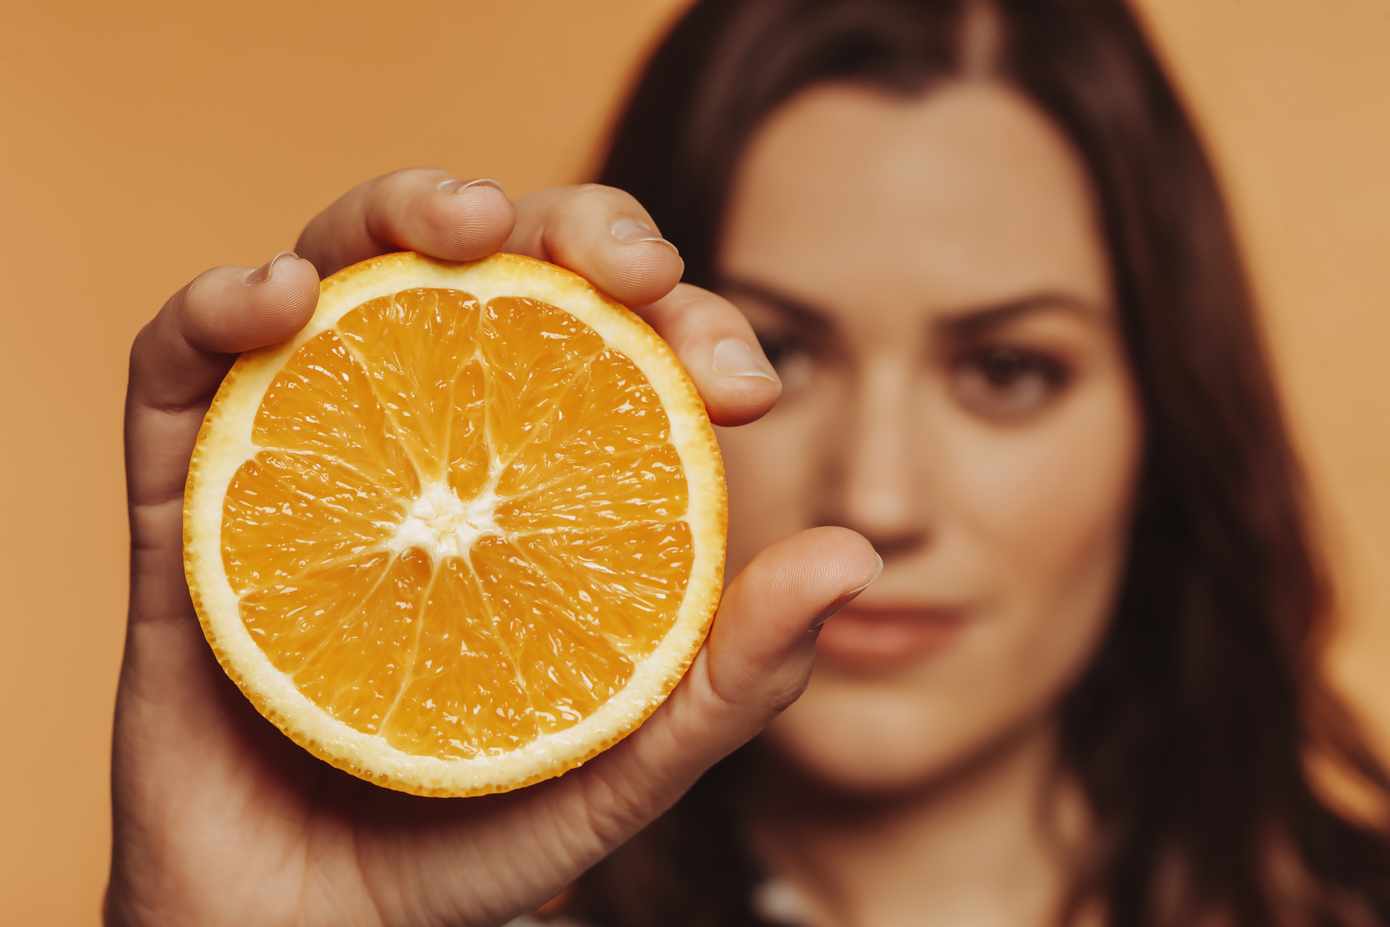 In welk fruit zit de meeste vitamine C?